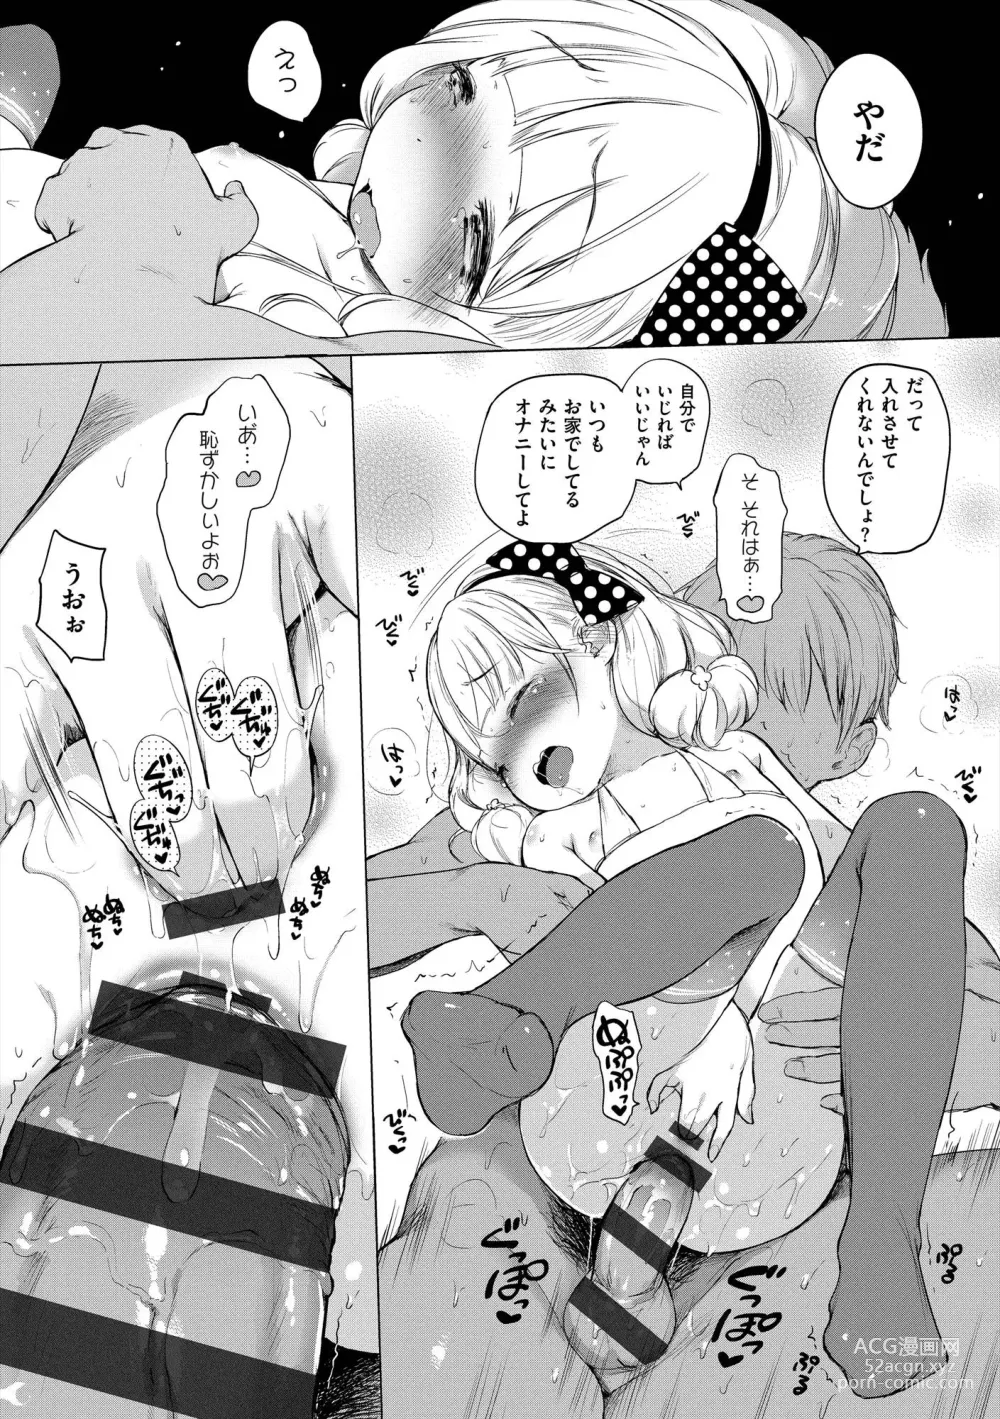 Page 289 of manga Onnanoko Party.